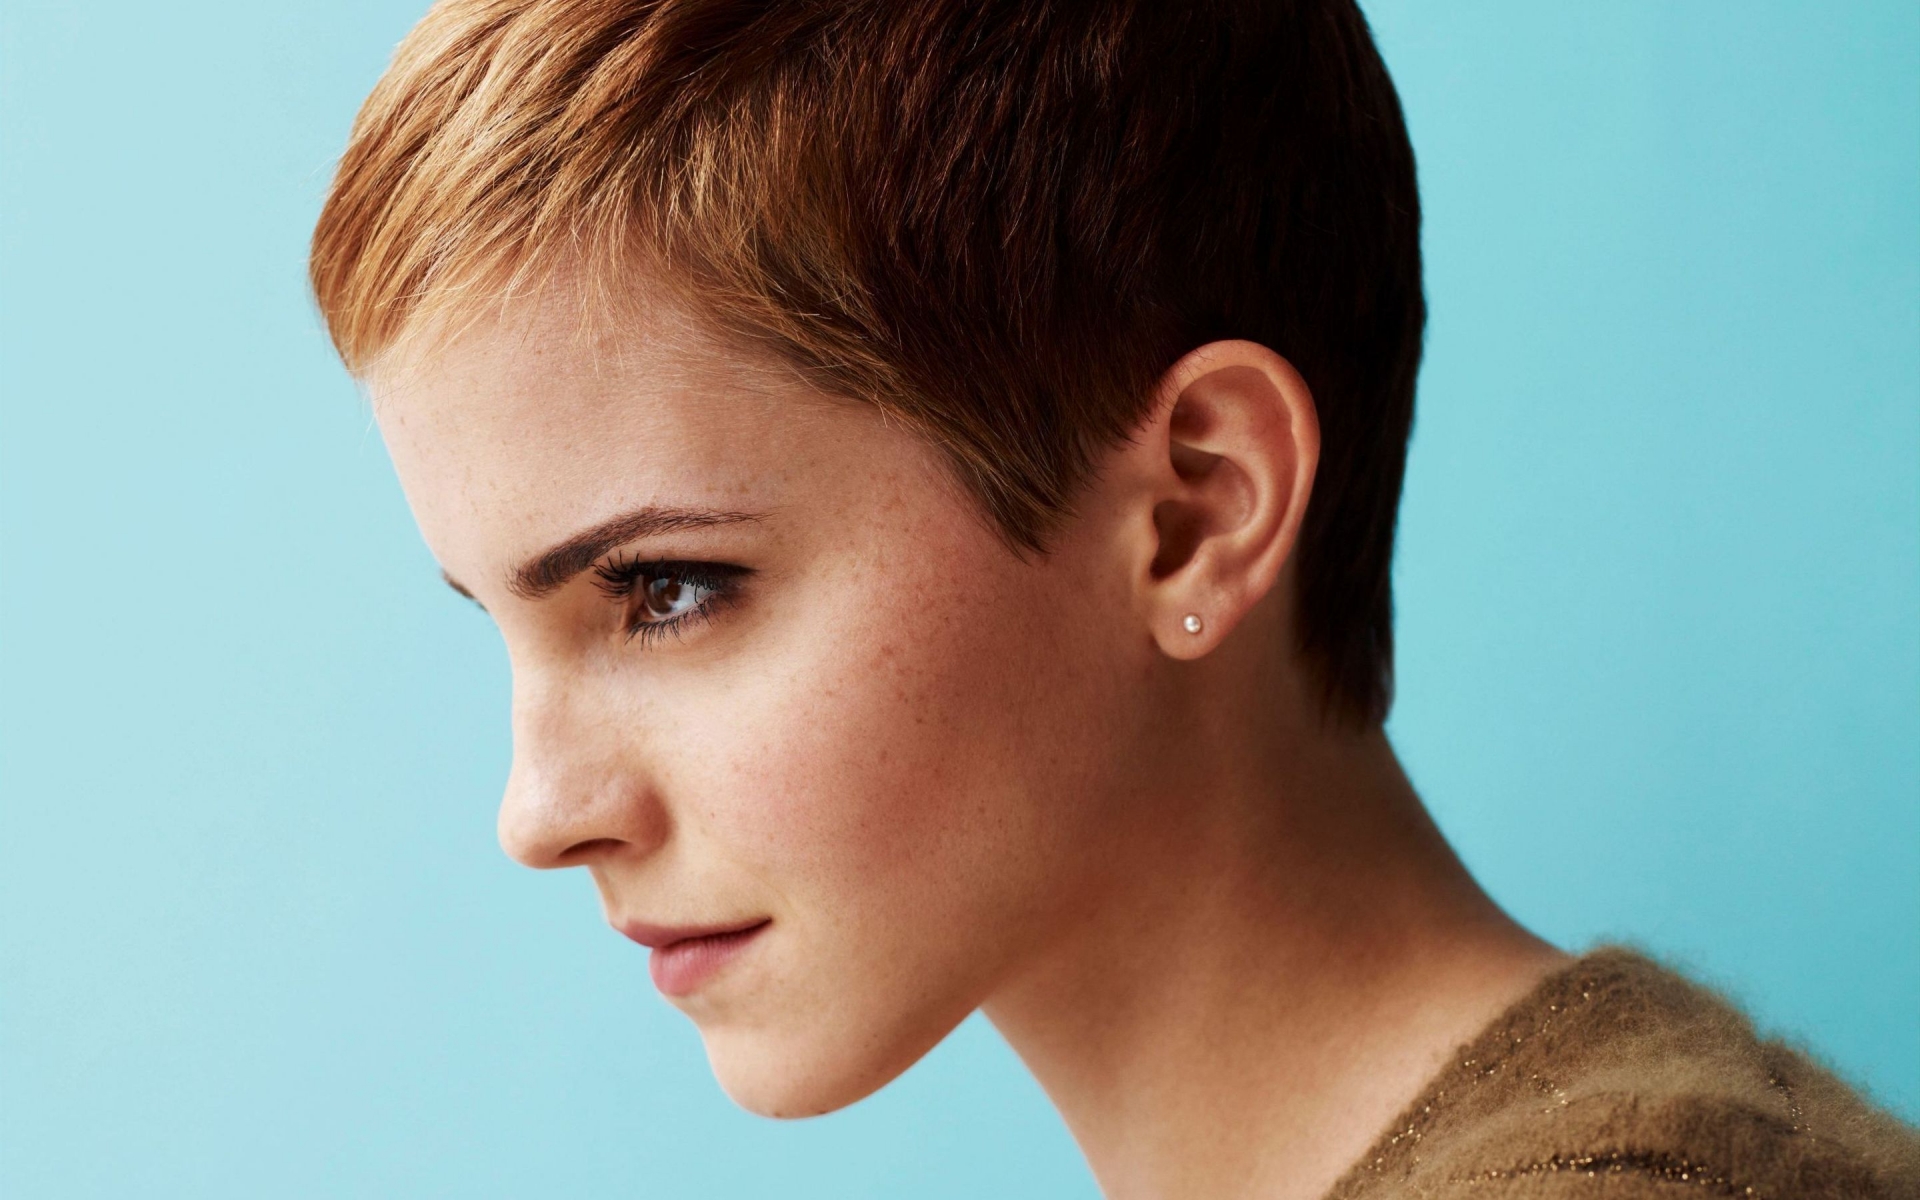 Emma Watson Short Hair for 1920 x 1200 widescreen resolution